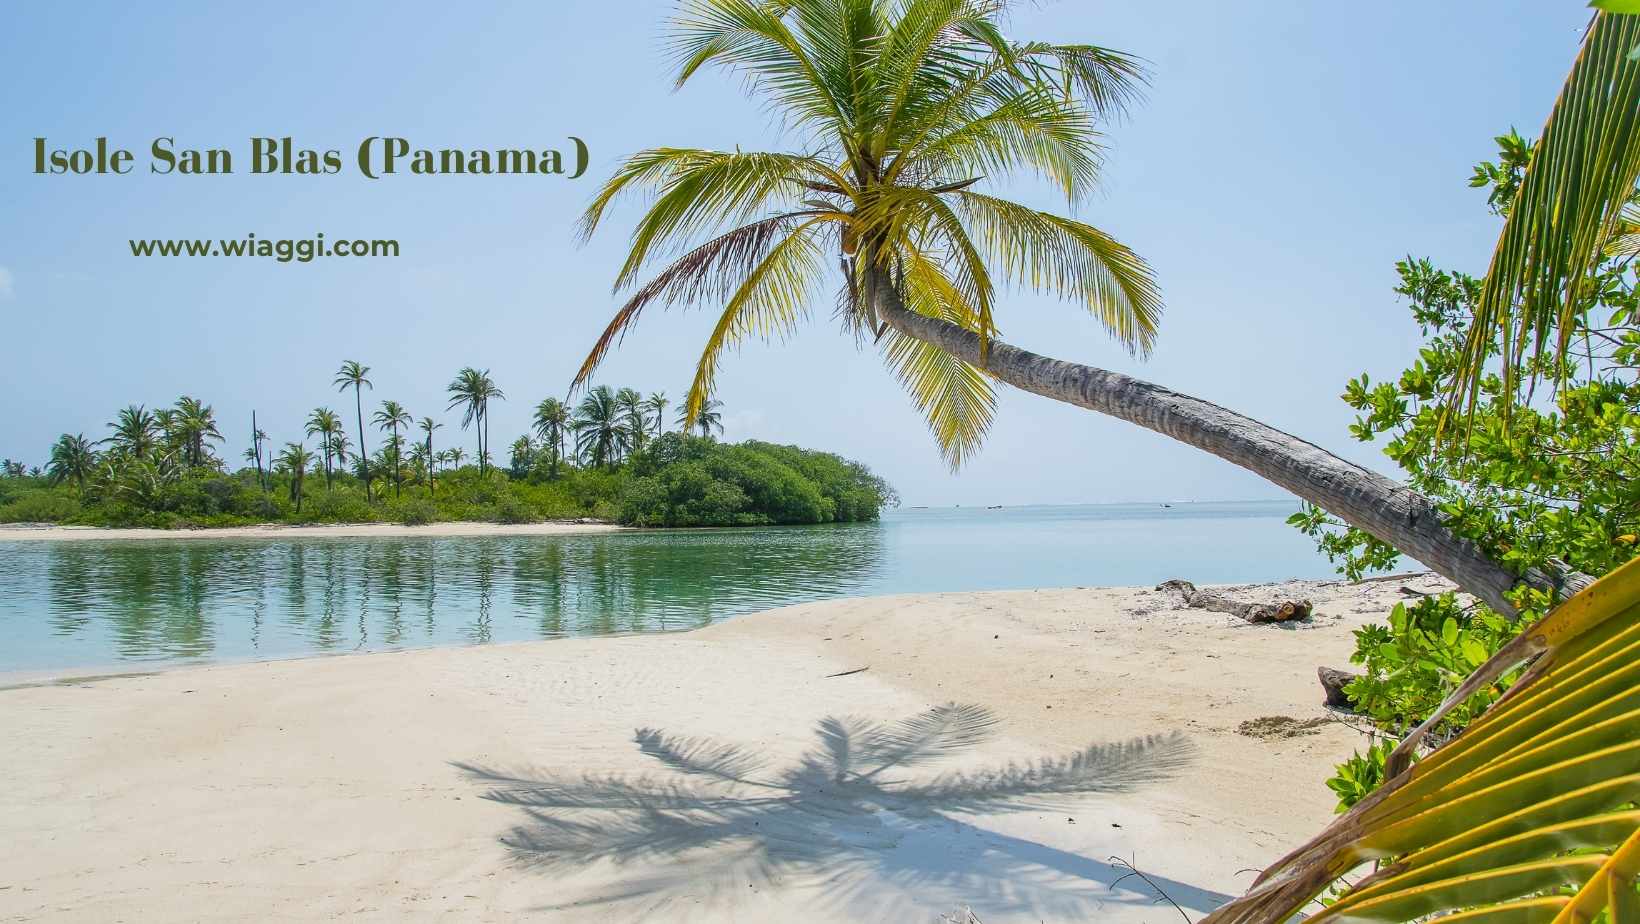 Isole San Blas (Panama)